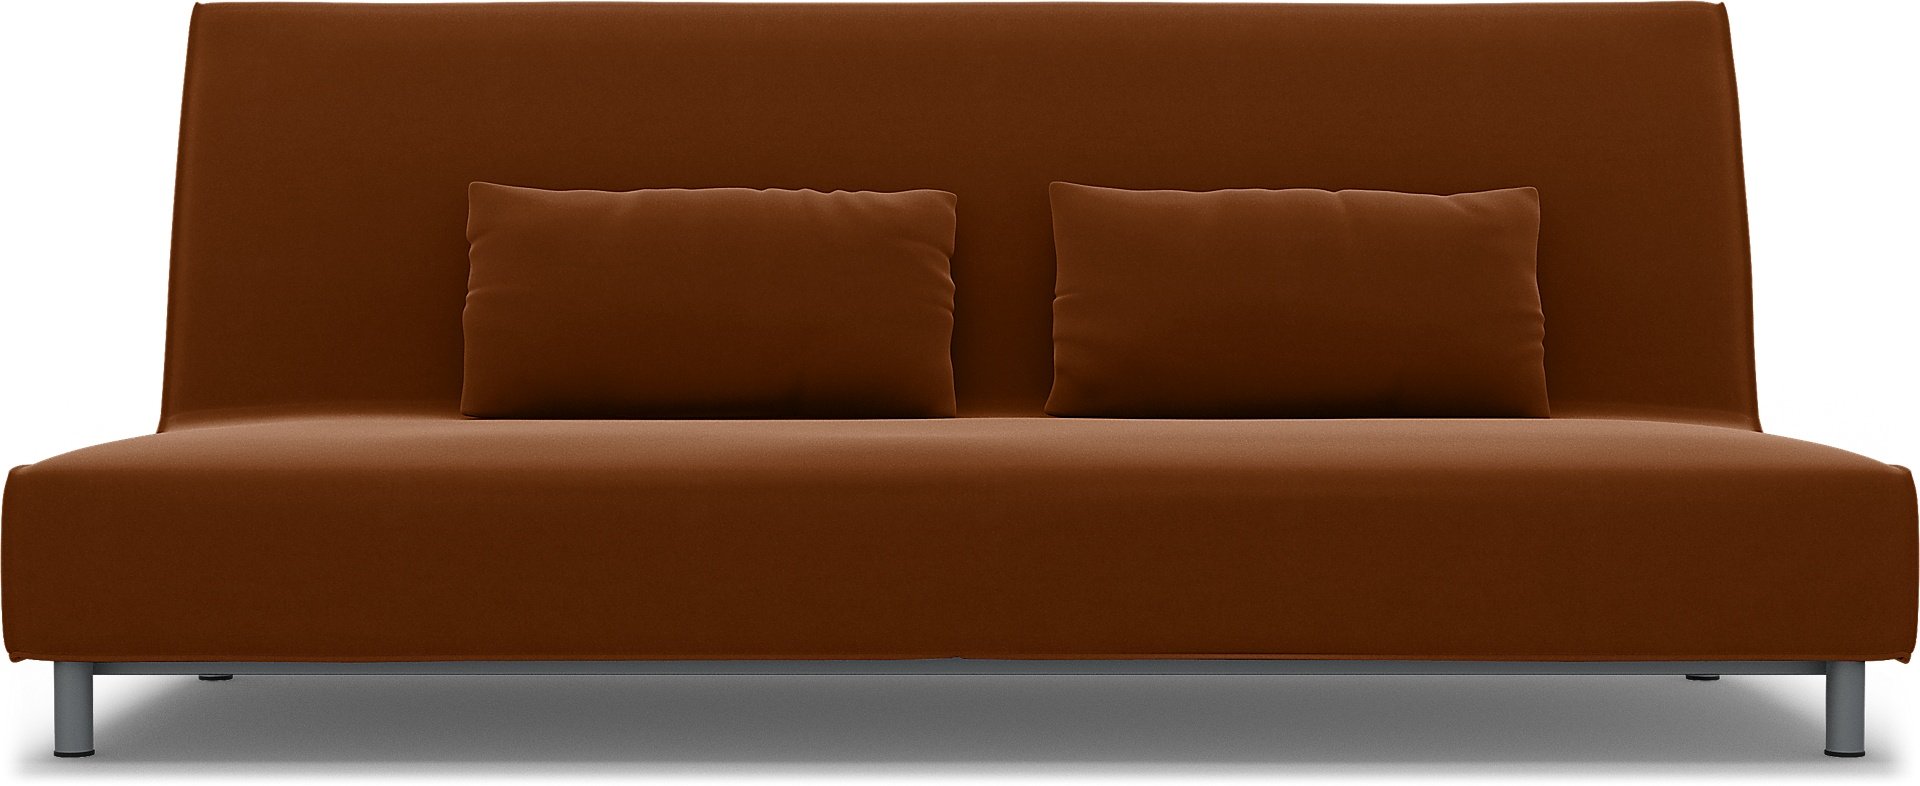 IKEA - Beddinge Sofa Bed Cover, Cinnamon, Velvet - Bemz